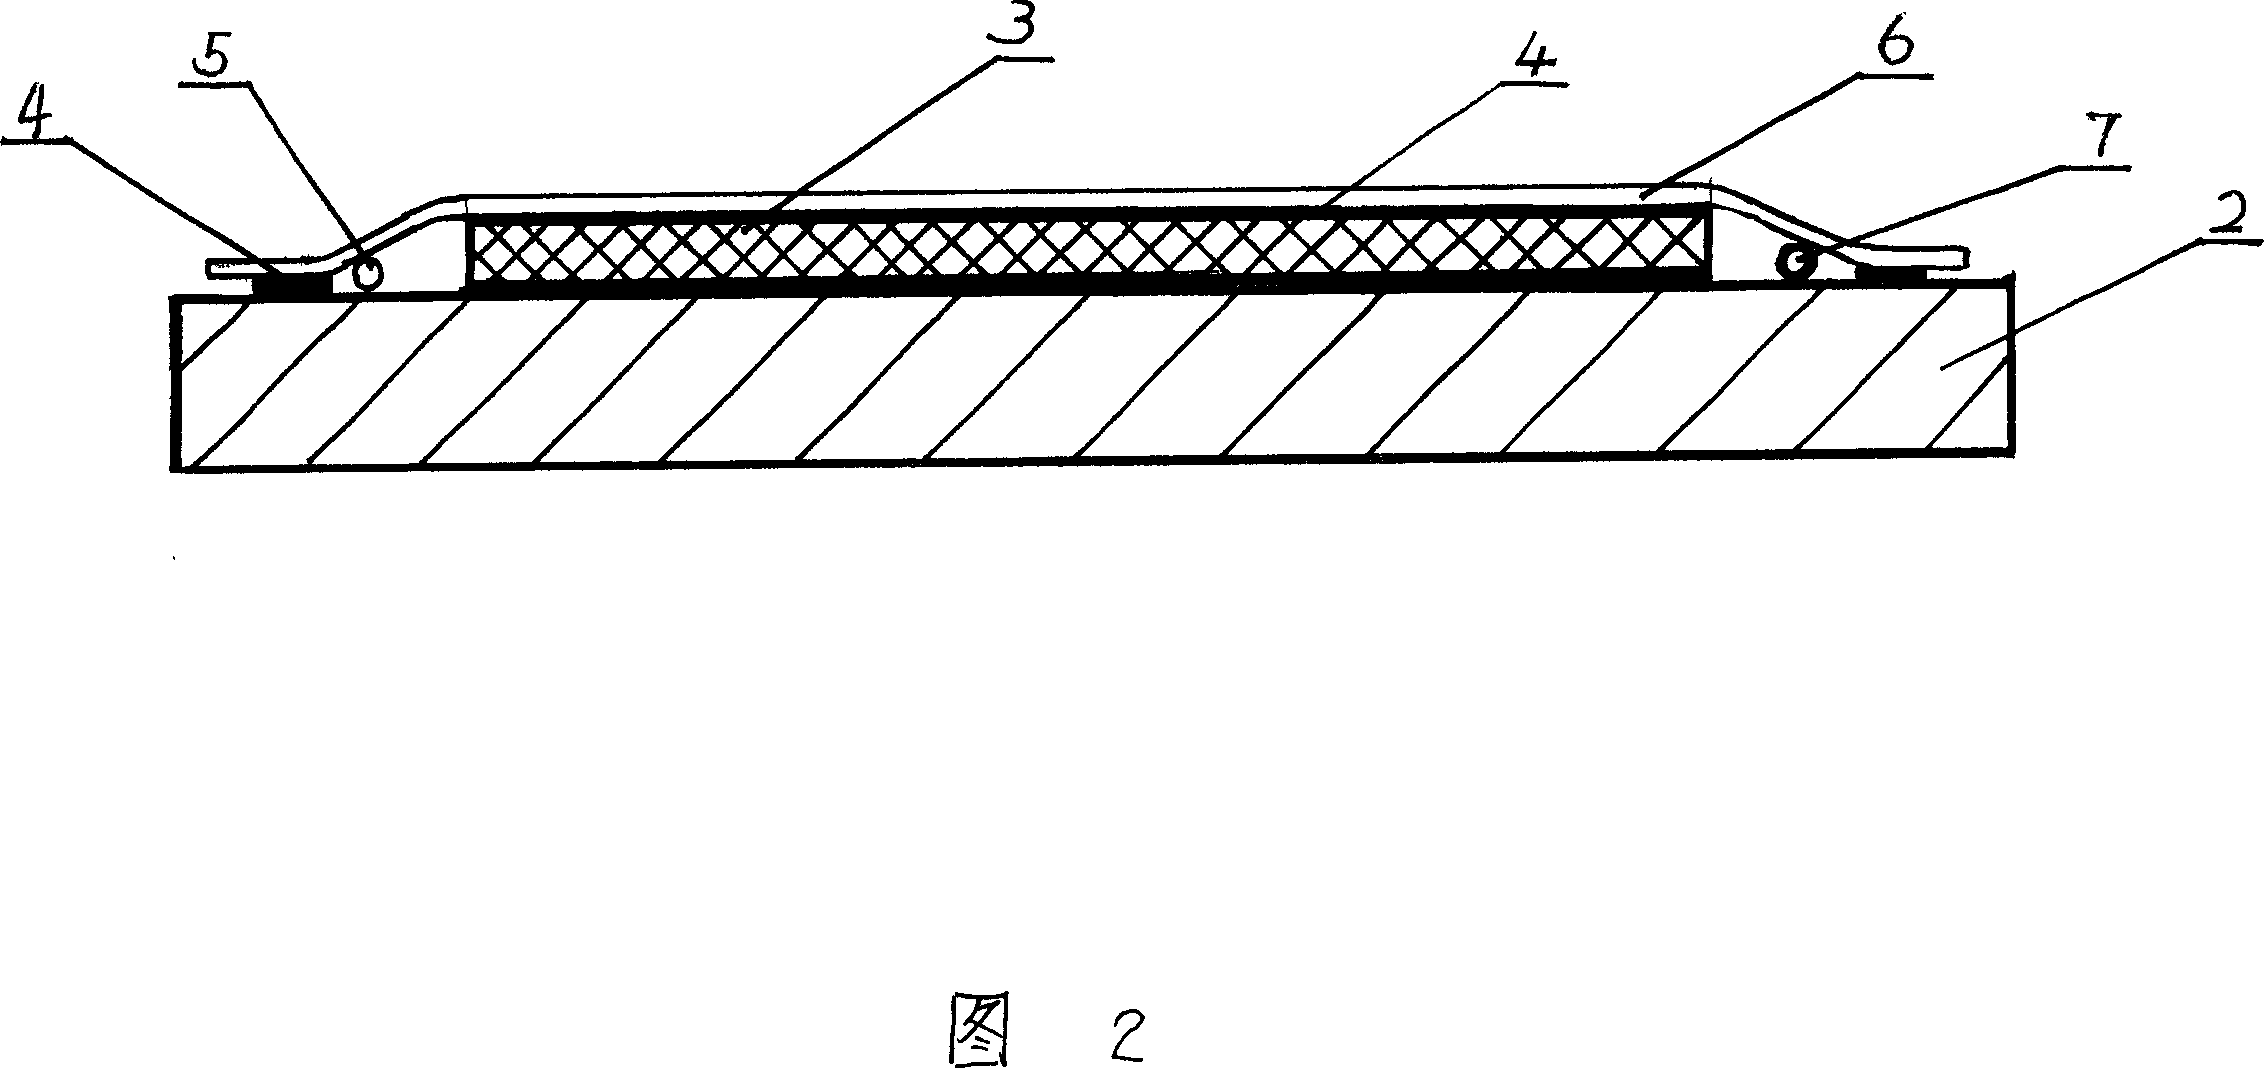 Fiberglass flow-guiding cloth and vacuum adsorption